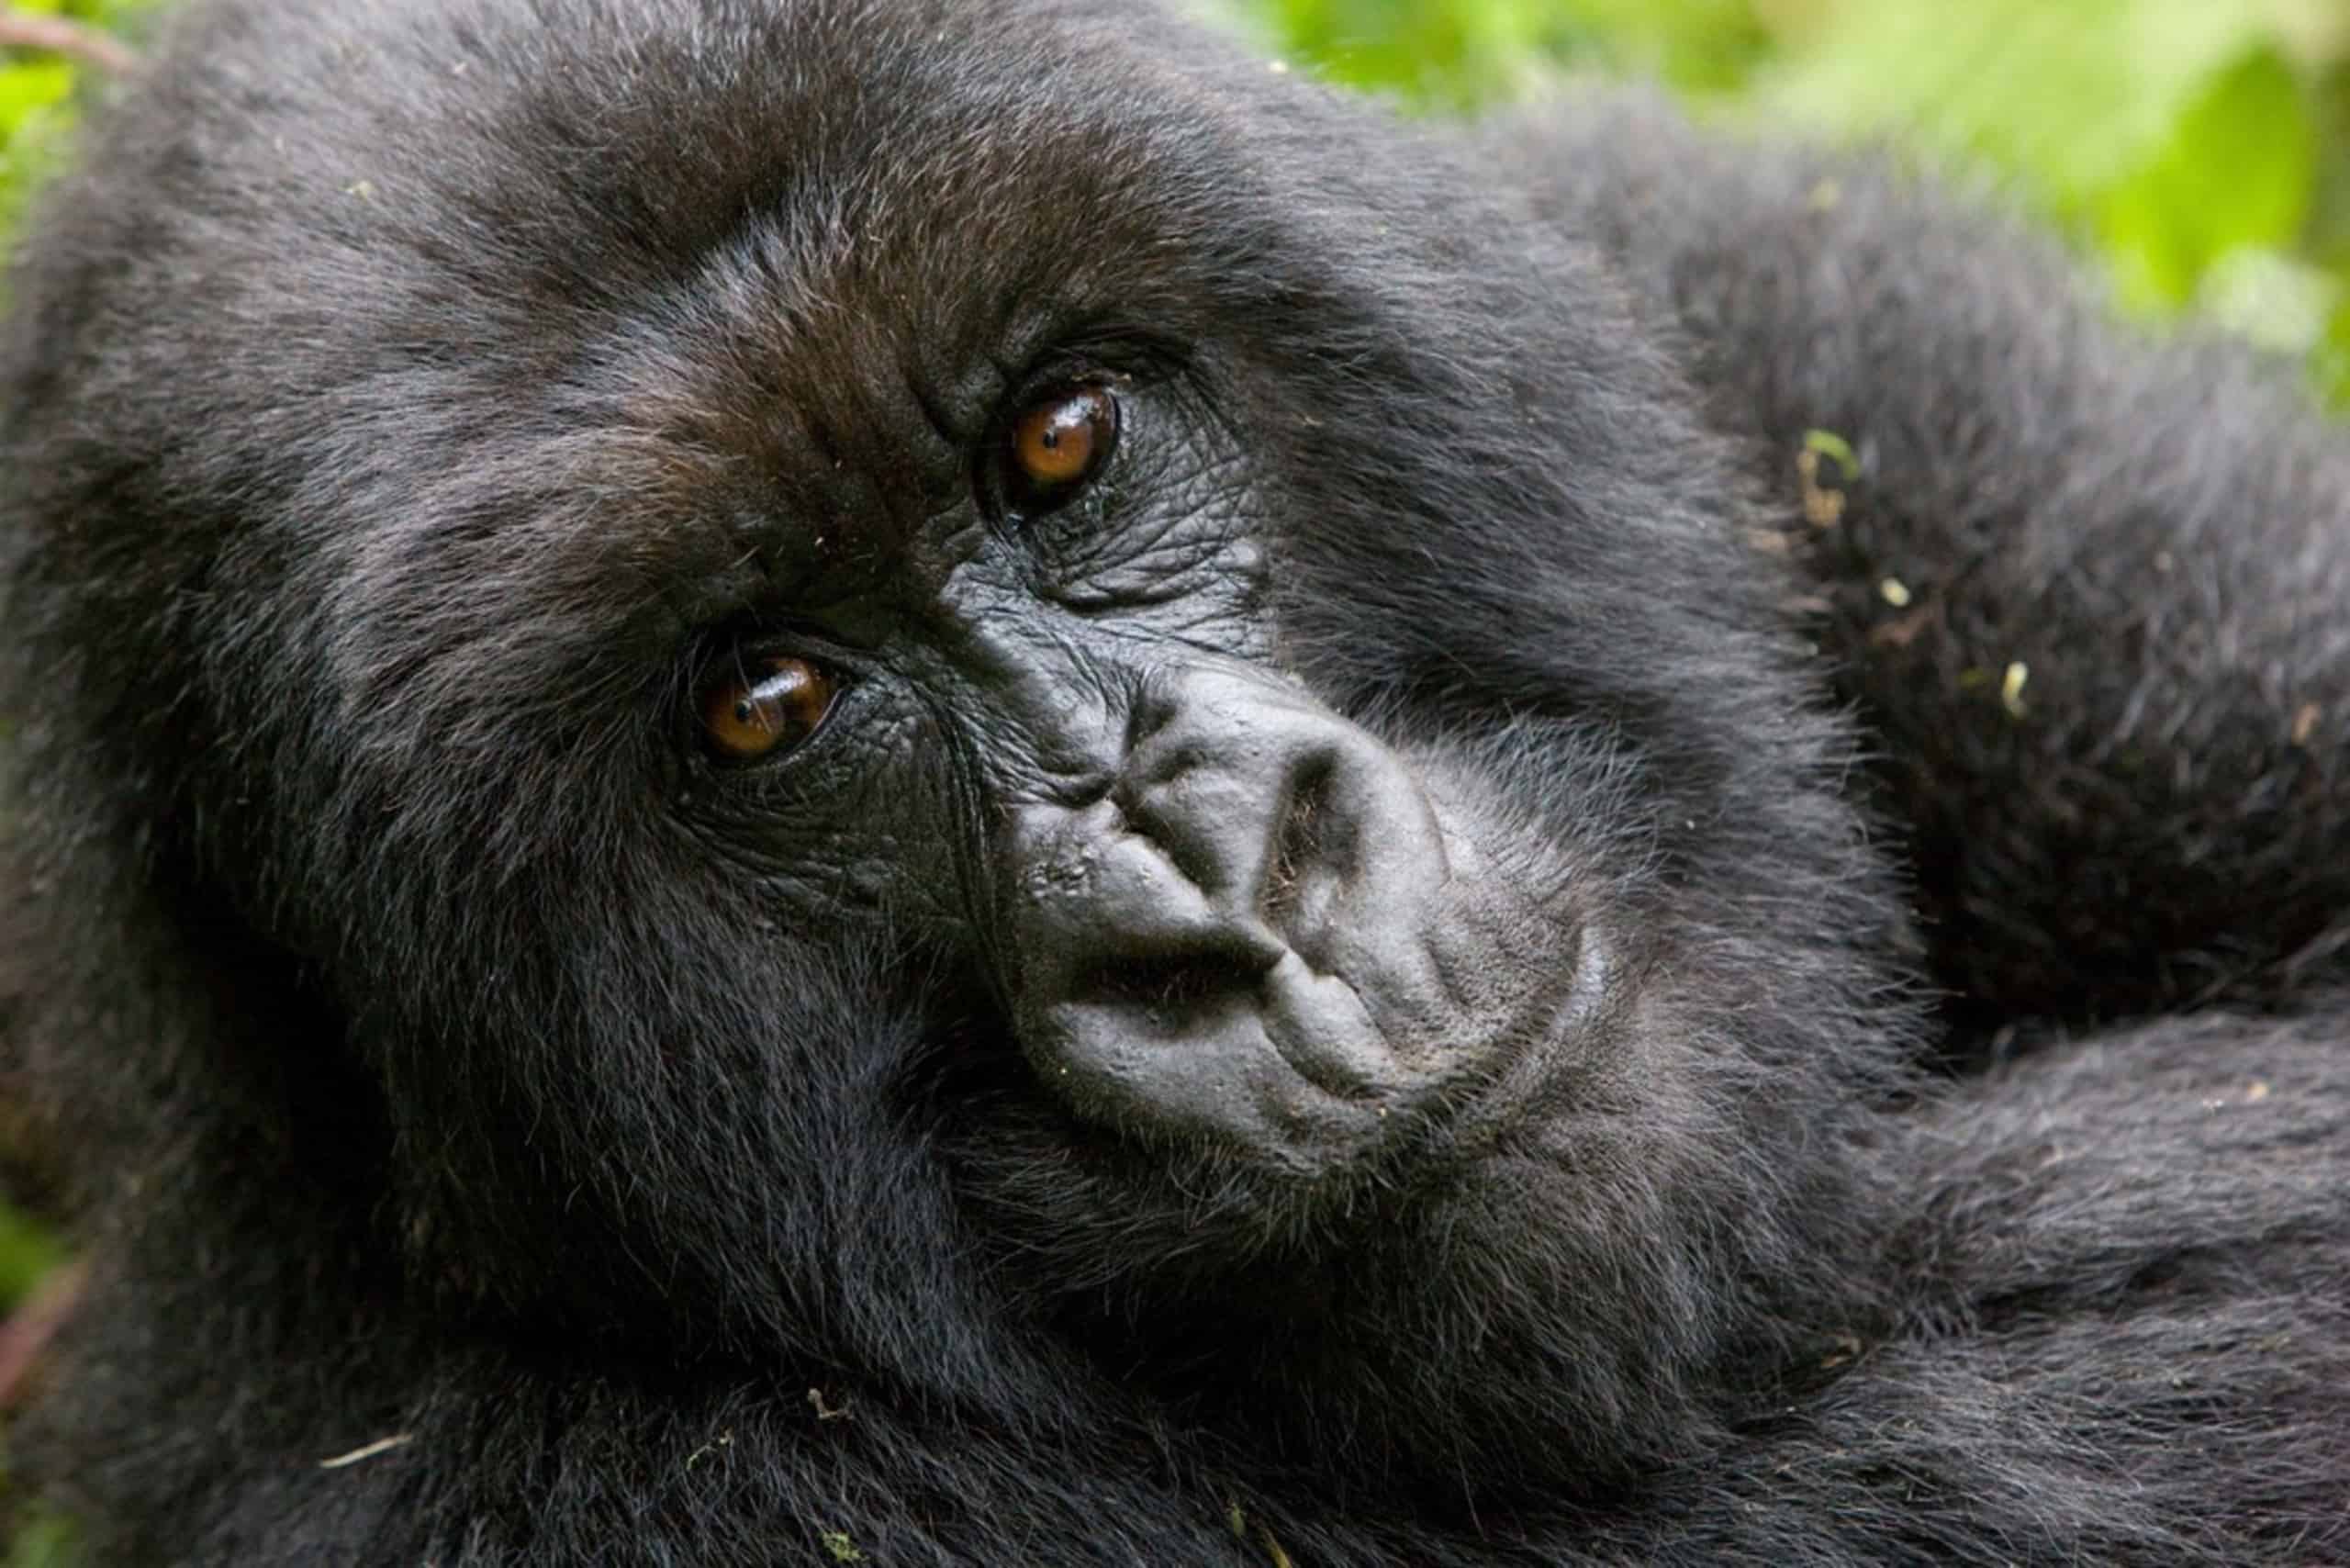 Uganda Bwindi Impenetrable Forest National Park